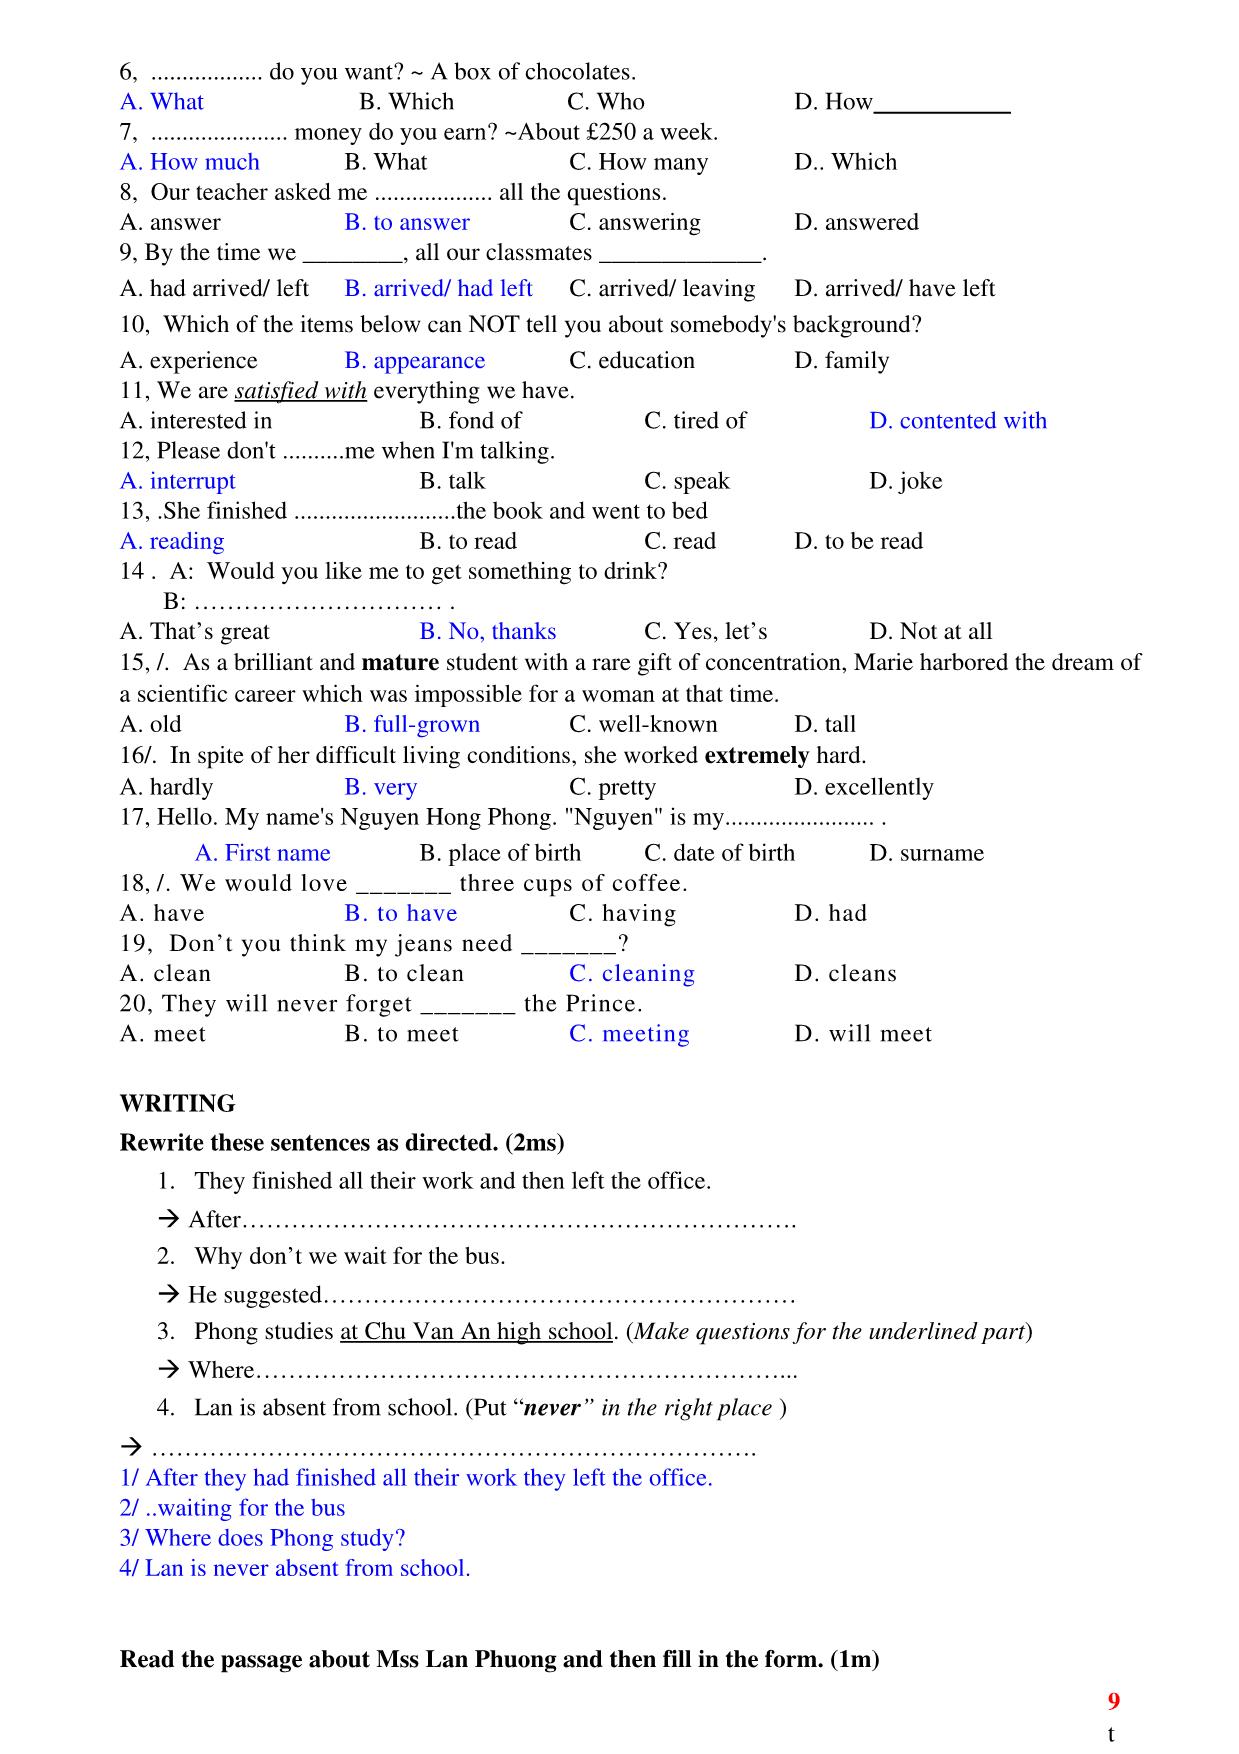 Ôn tập kiểm tra 1 tiết lần 1 môn tiếng Anh Lớp 10 - Học kì 1 trang 9